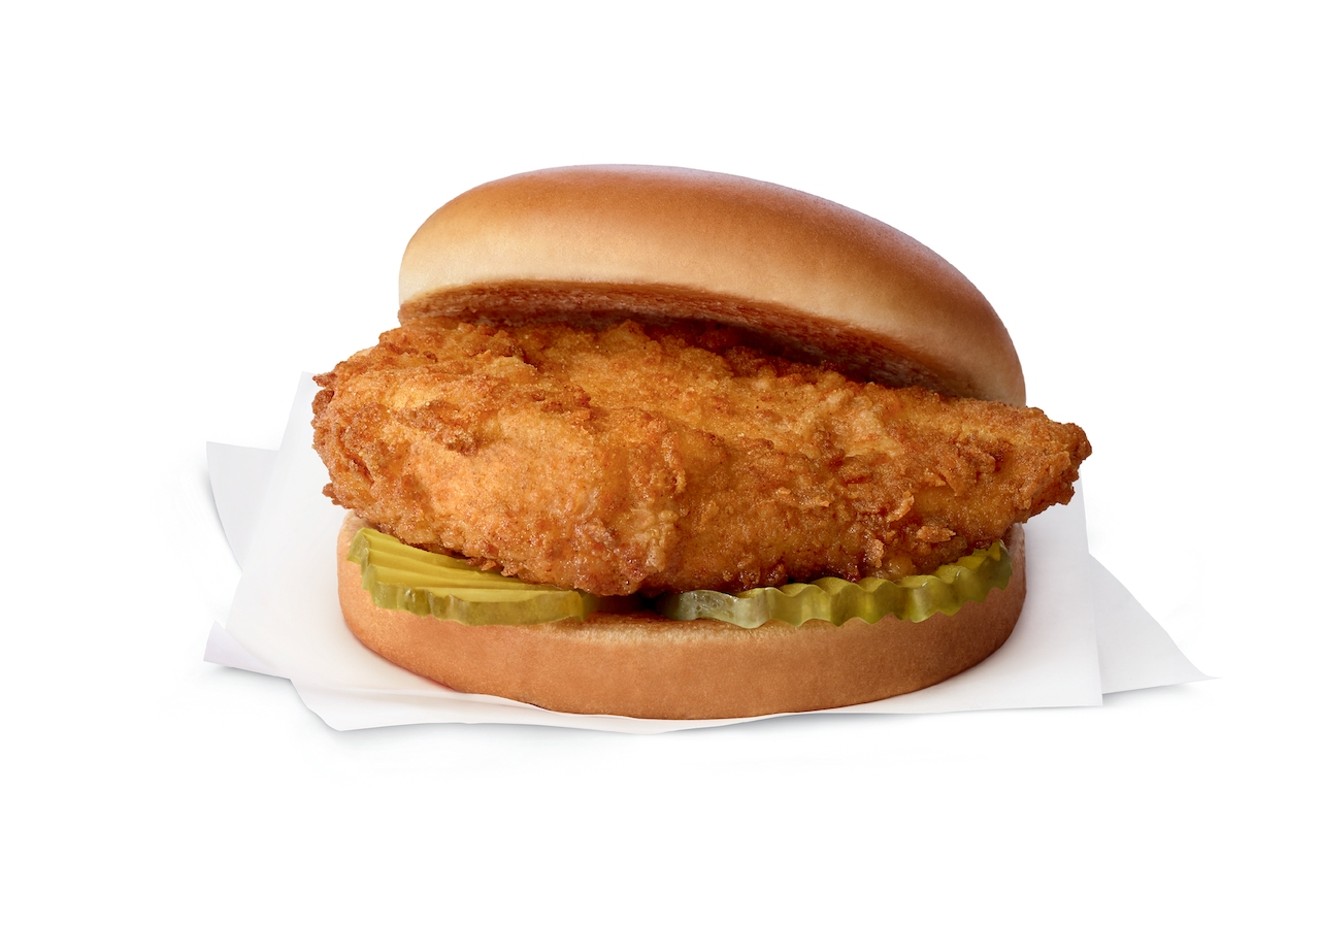 Chick-fil-A's chicken sandwich